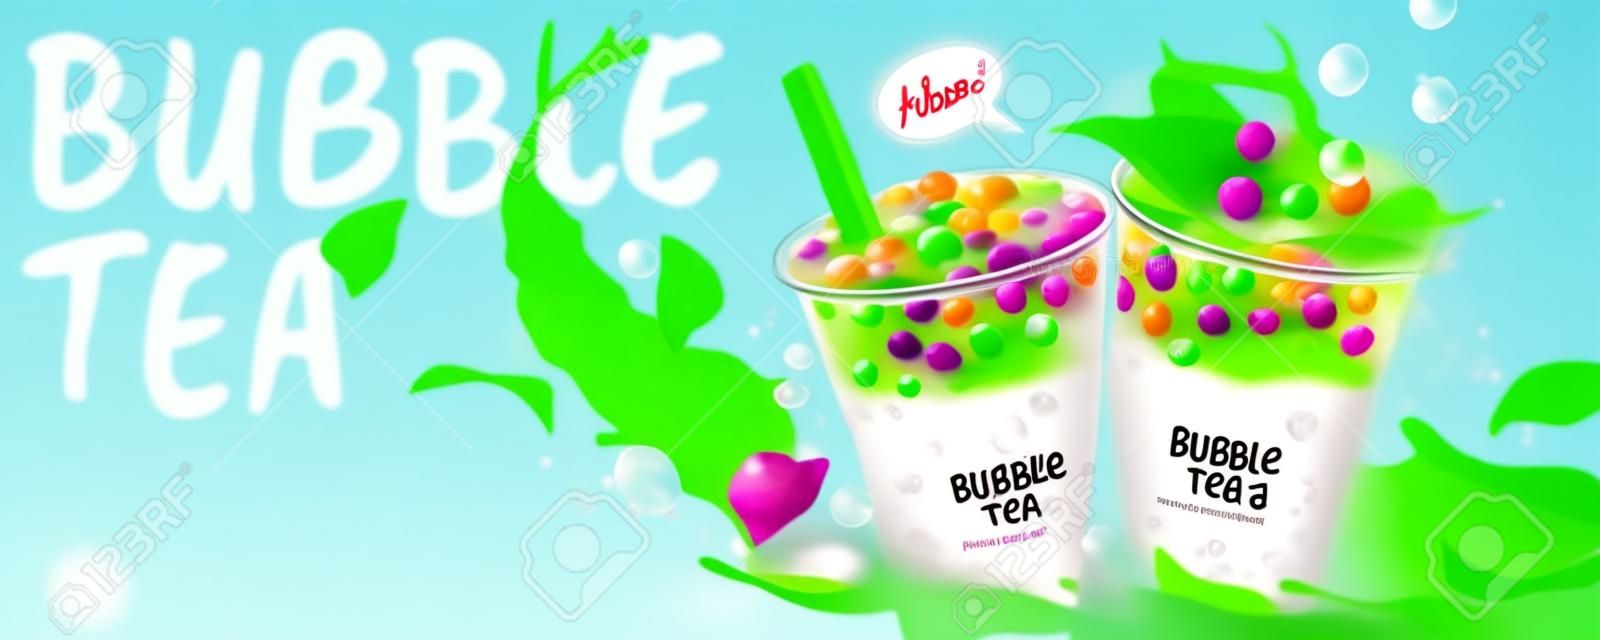 Banery reklamowe herbaty bąbelkowej z rozpryskiwanym mlekiem i zielonymi liśćmi, ilustracja 3d